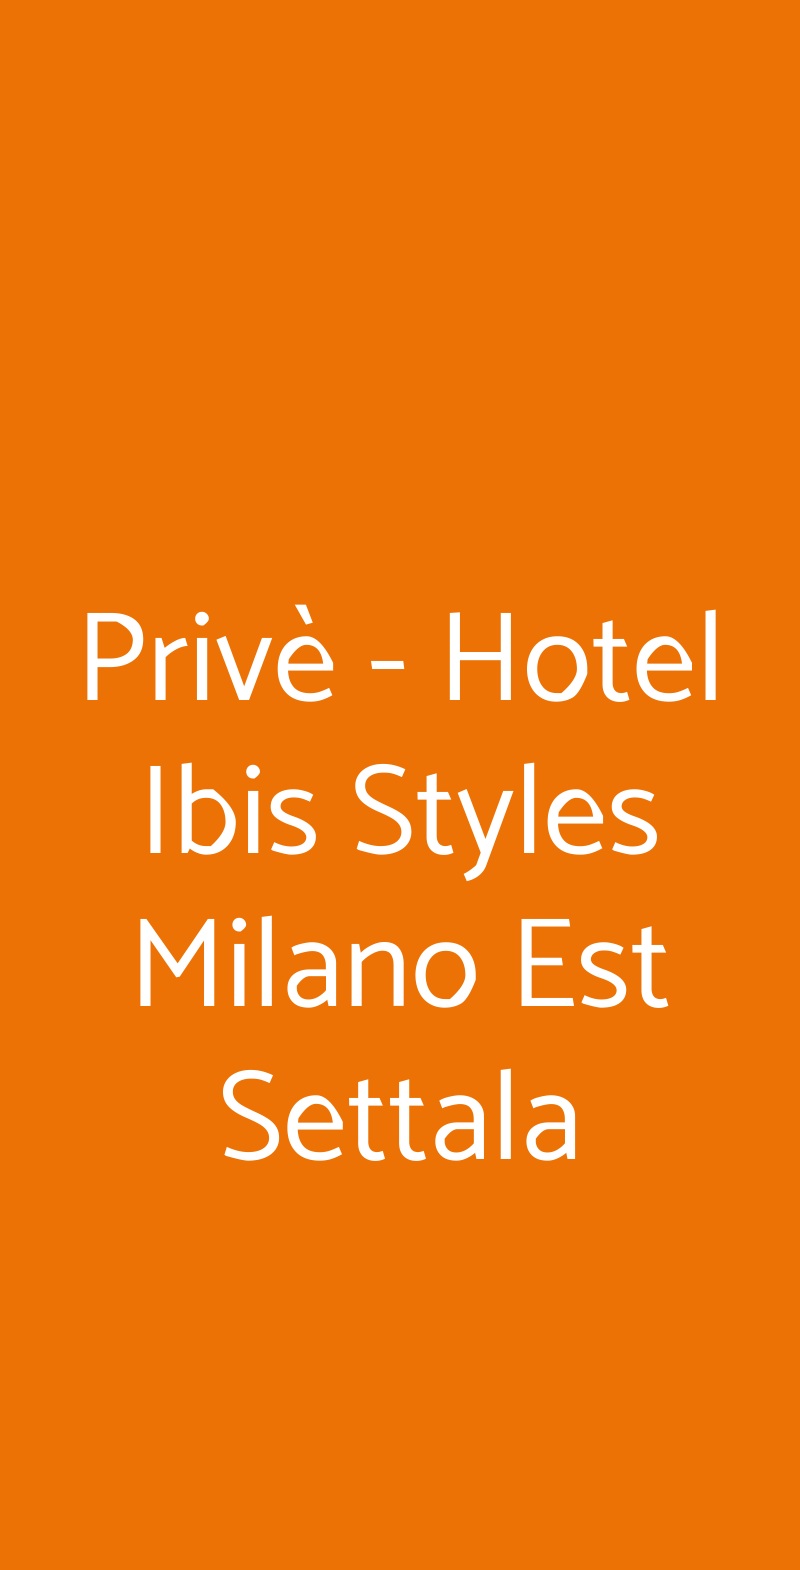 Privè - Hotel Ibis Styles Milano Est Settala Settala menù 1 pagina